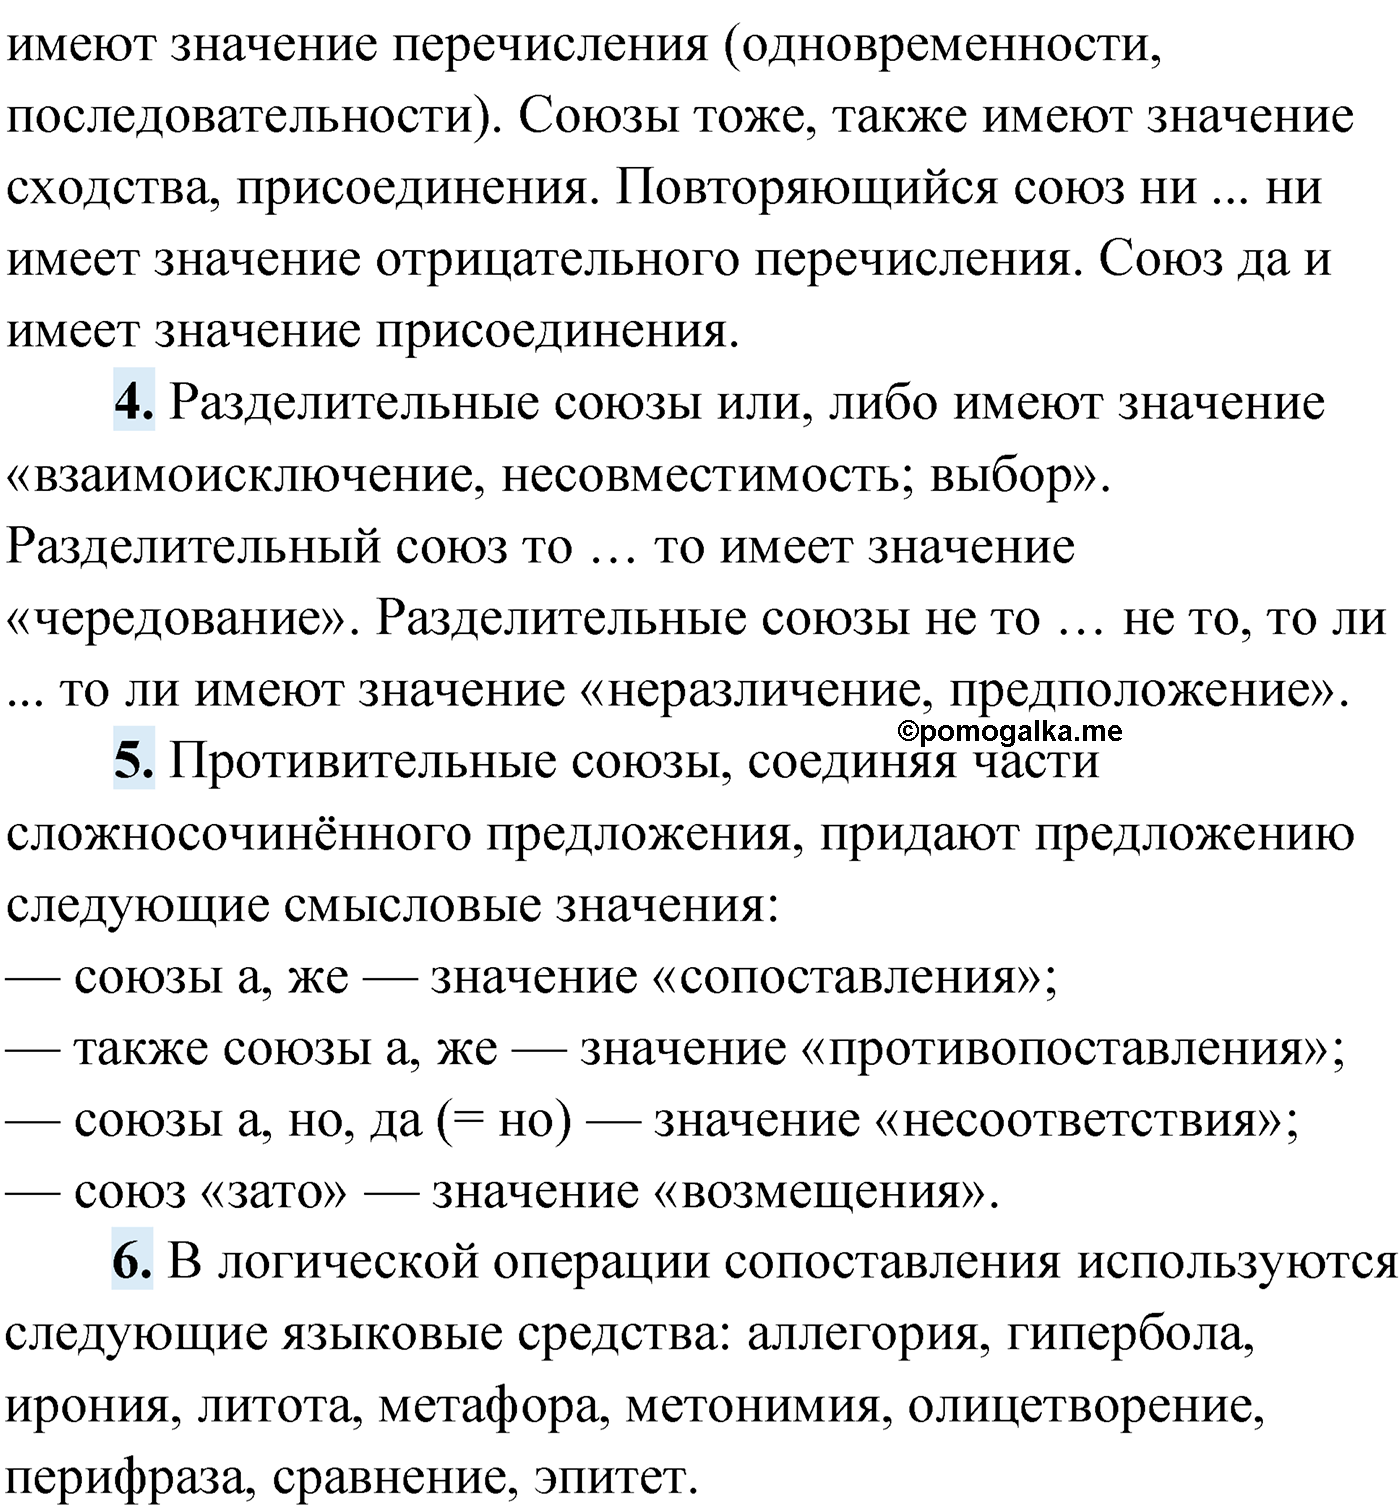 Проверь себя, Страница 60 русский язык 9 класс Мурина 2019 год